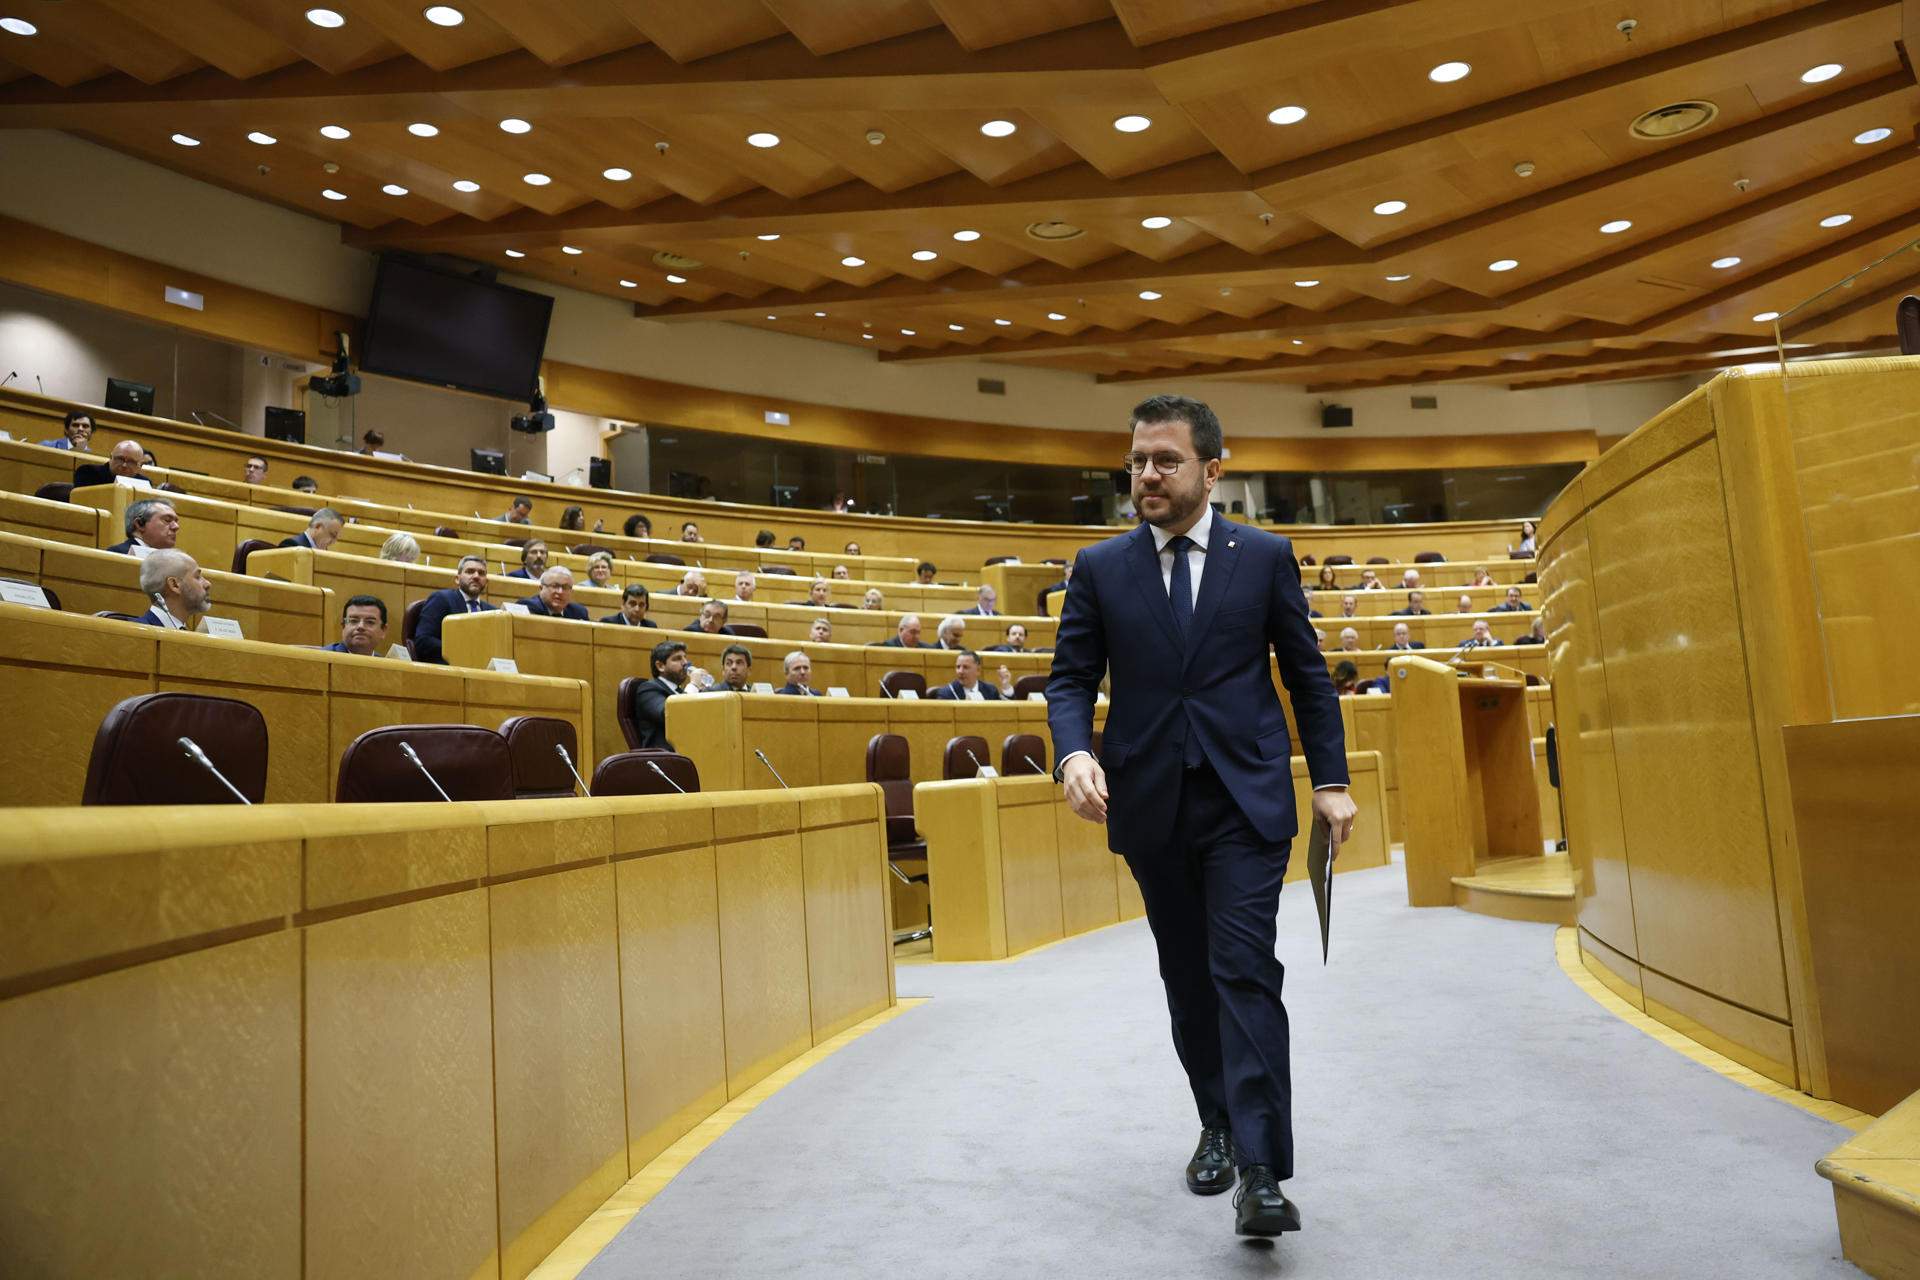 Aragonès, en el Senado: "La amnistía dejó de ser imposible, como pasará con el referéndum"